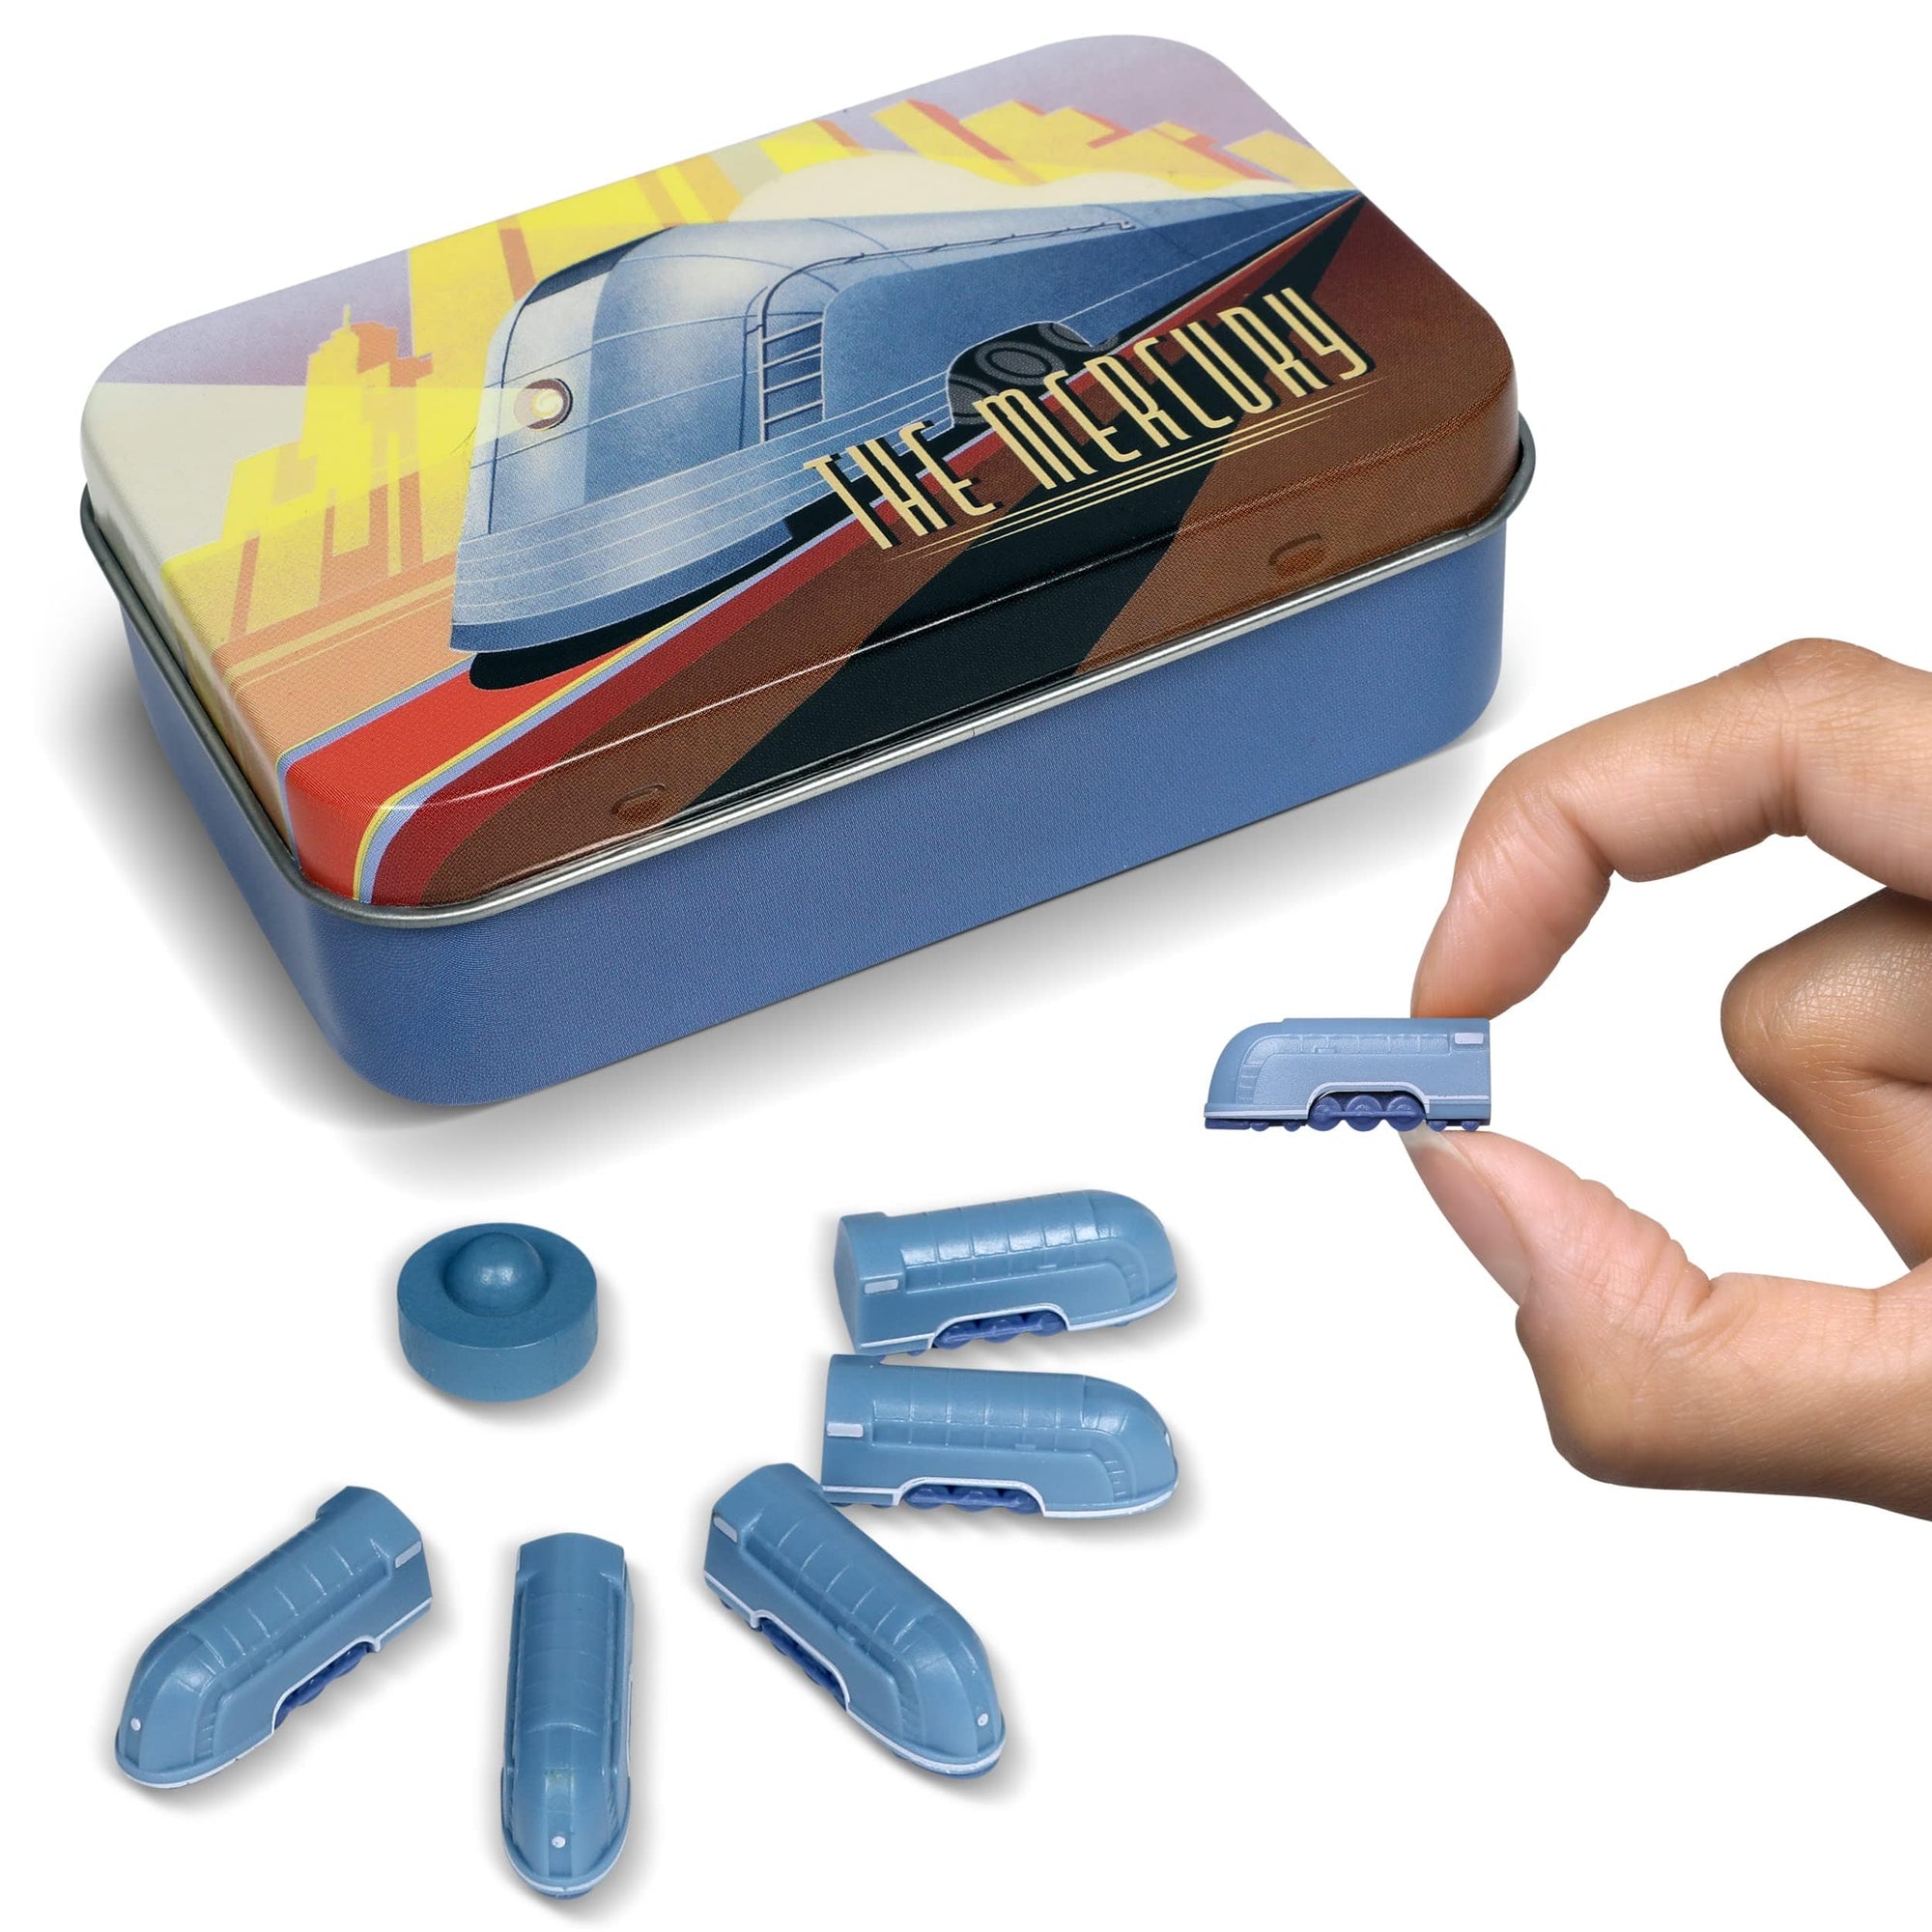 The Little Plastic Train Company Accessories The Little Plastic Train Company Deluxe Board Game Train Set: Mercury